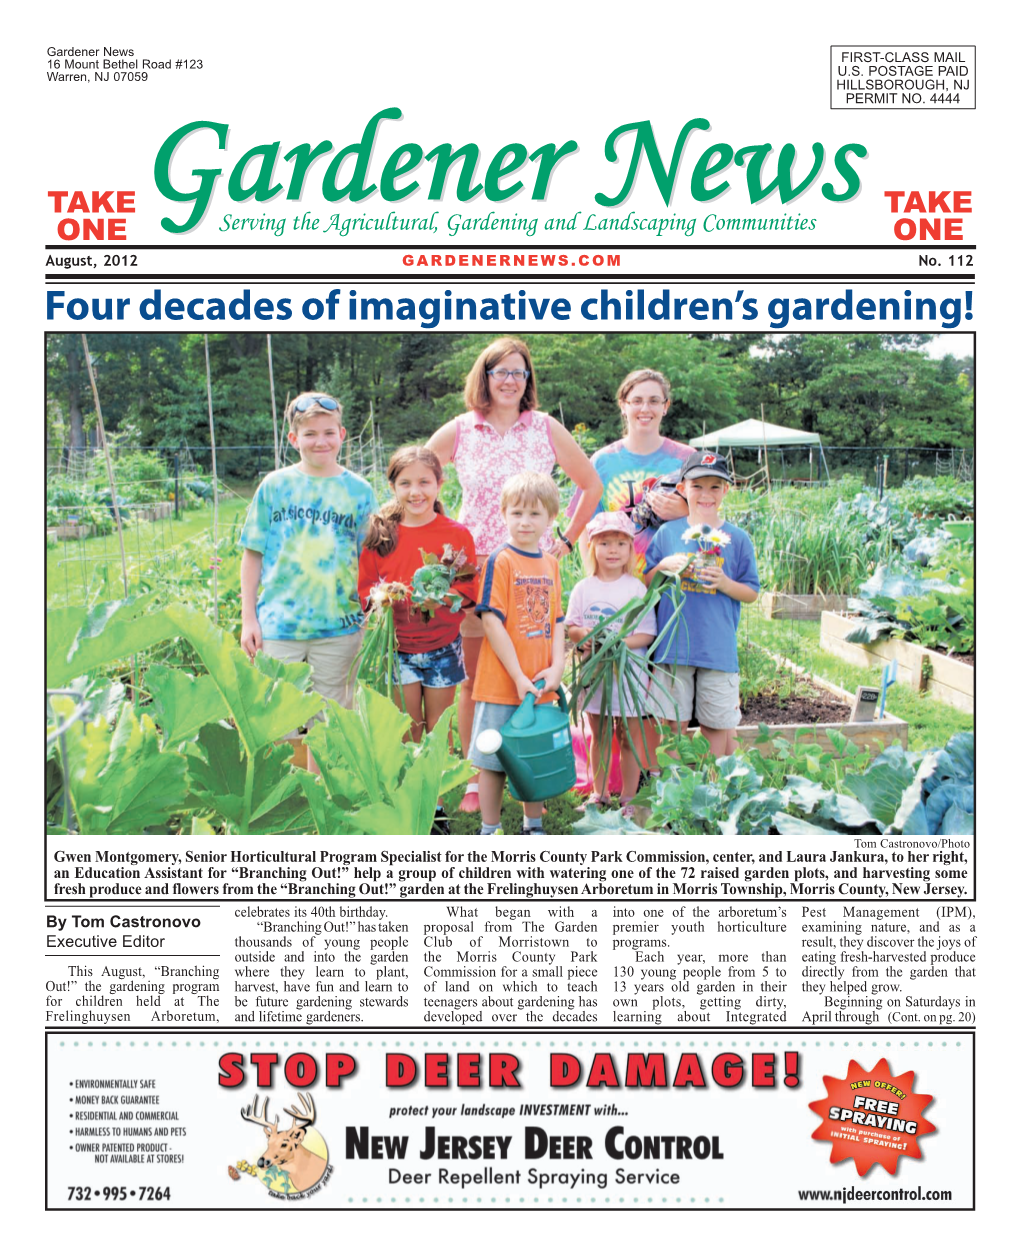 Four Decades of Imaginative Children's Gardening!